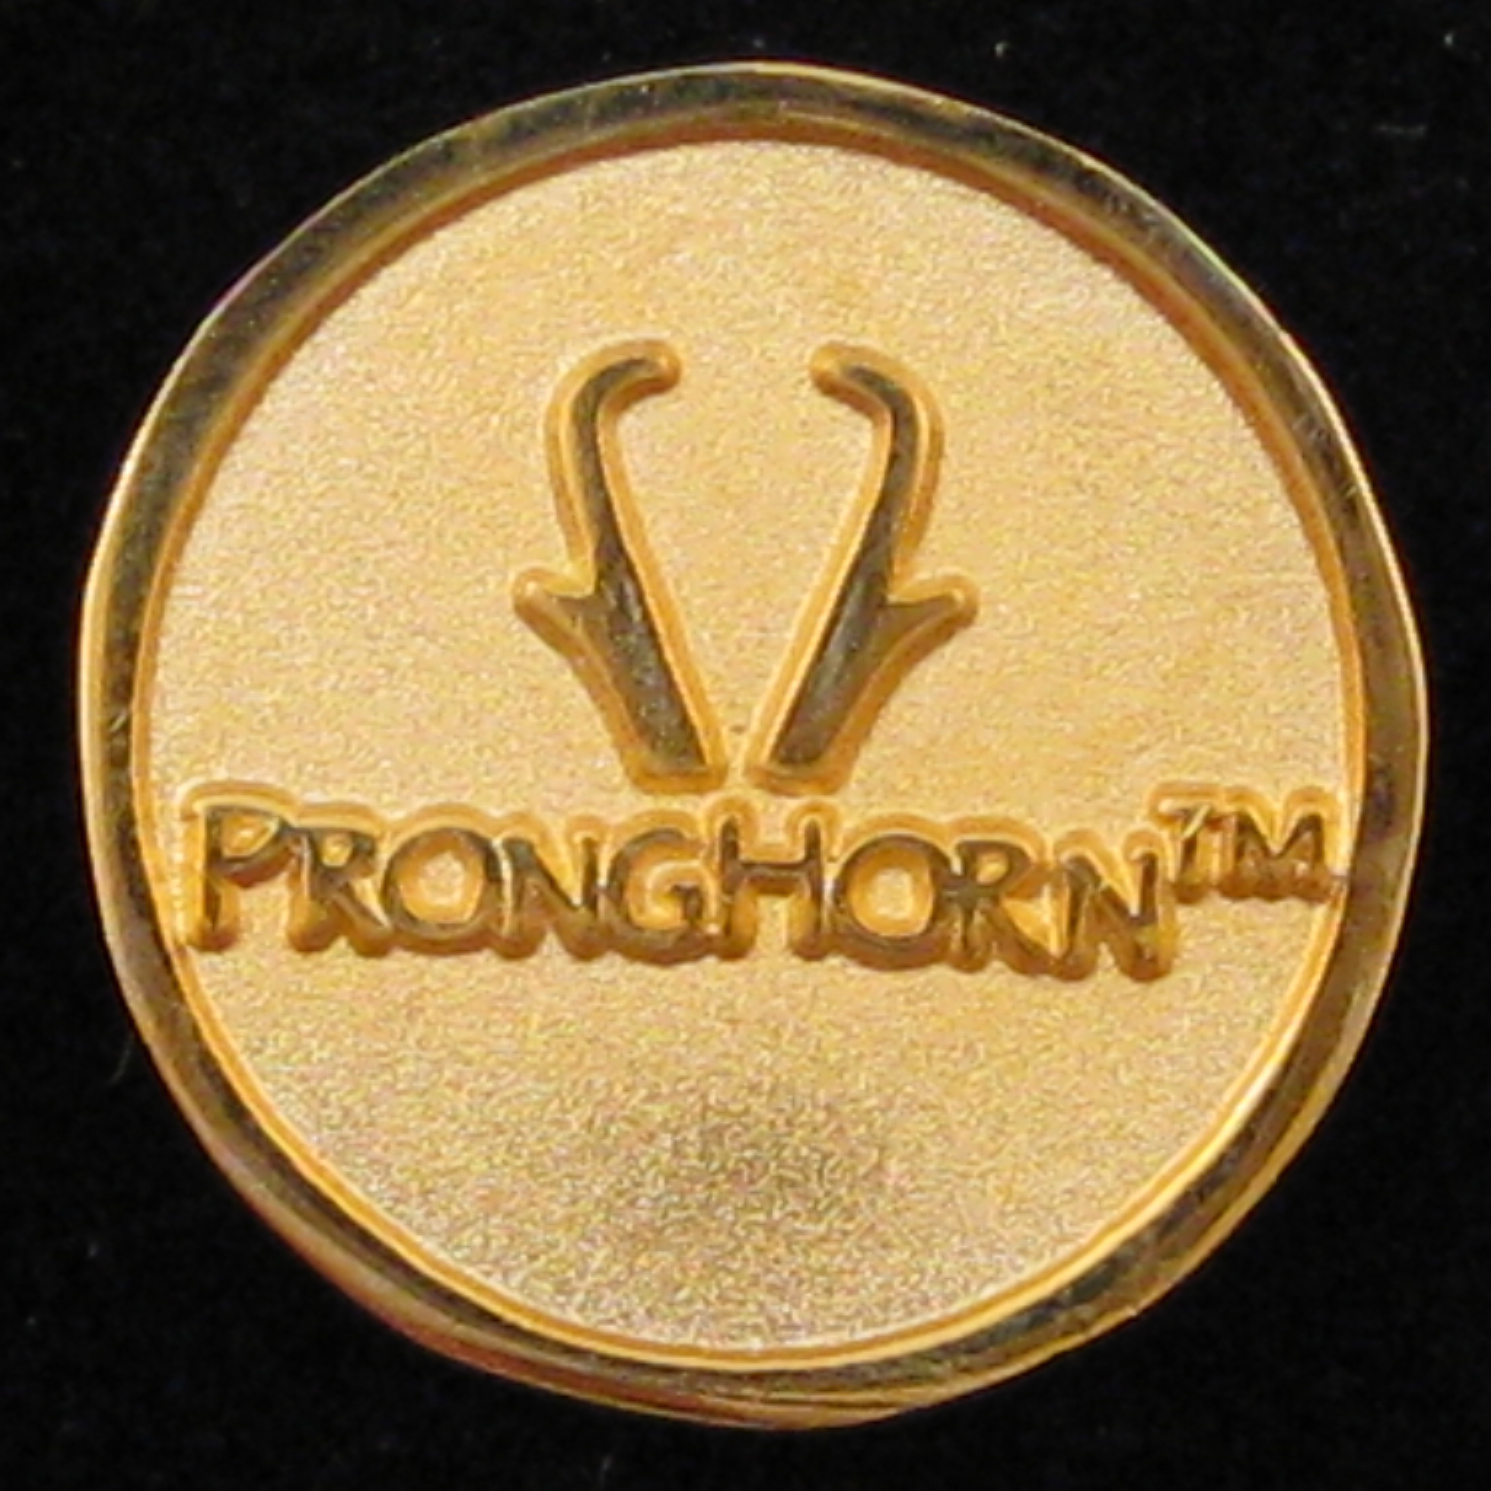 Pronghorn - Back